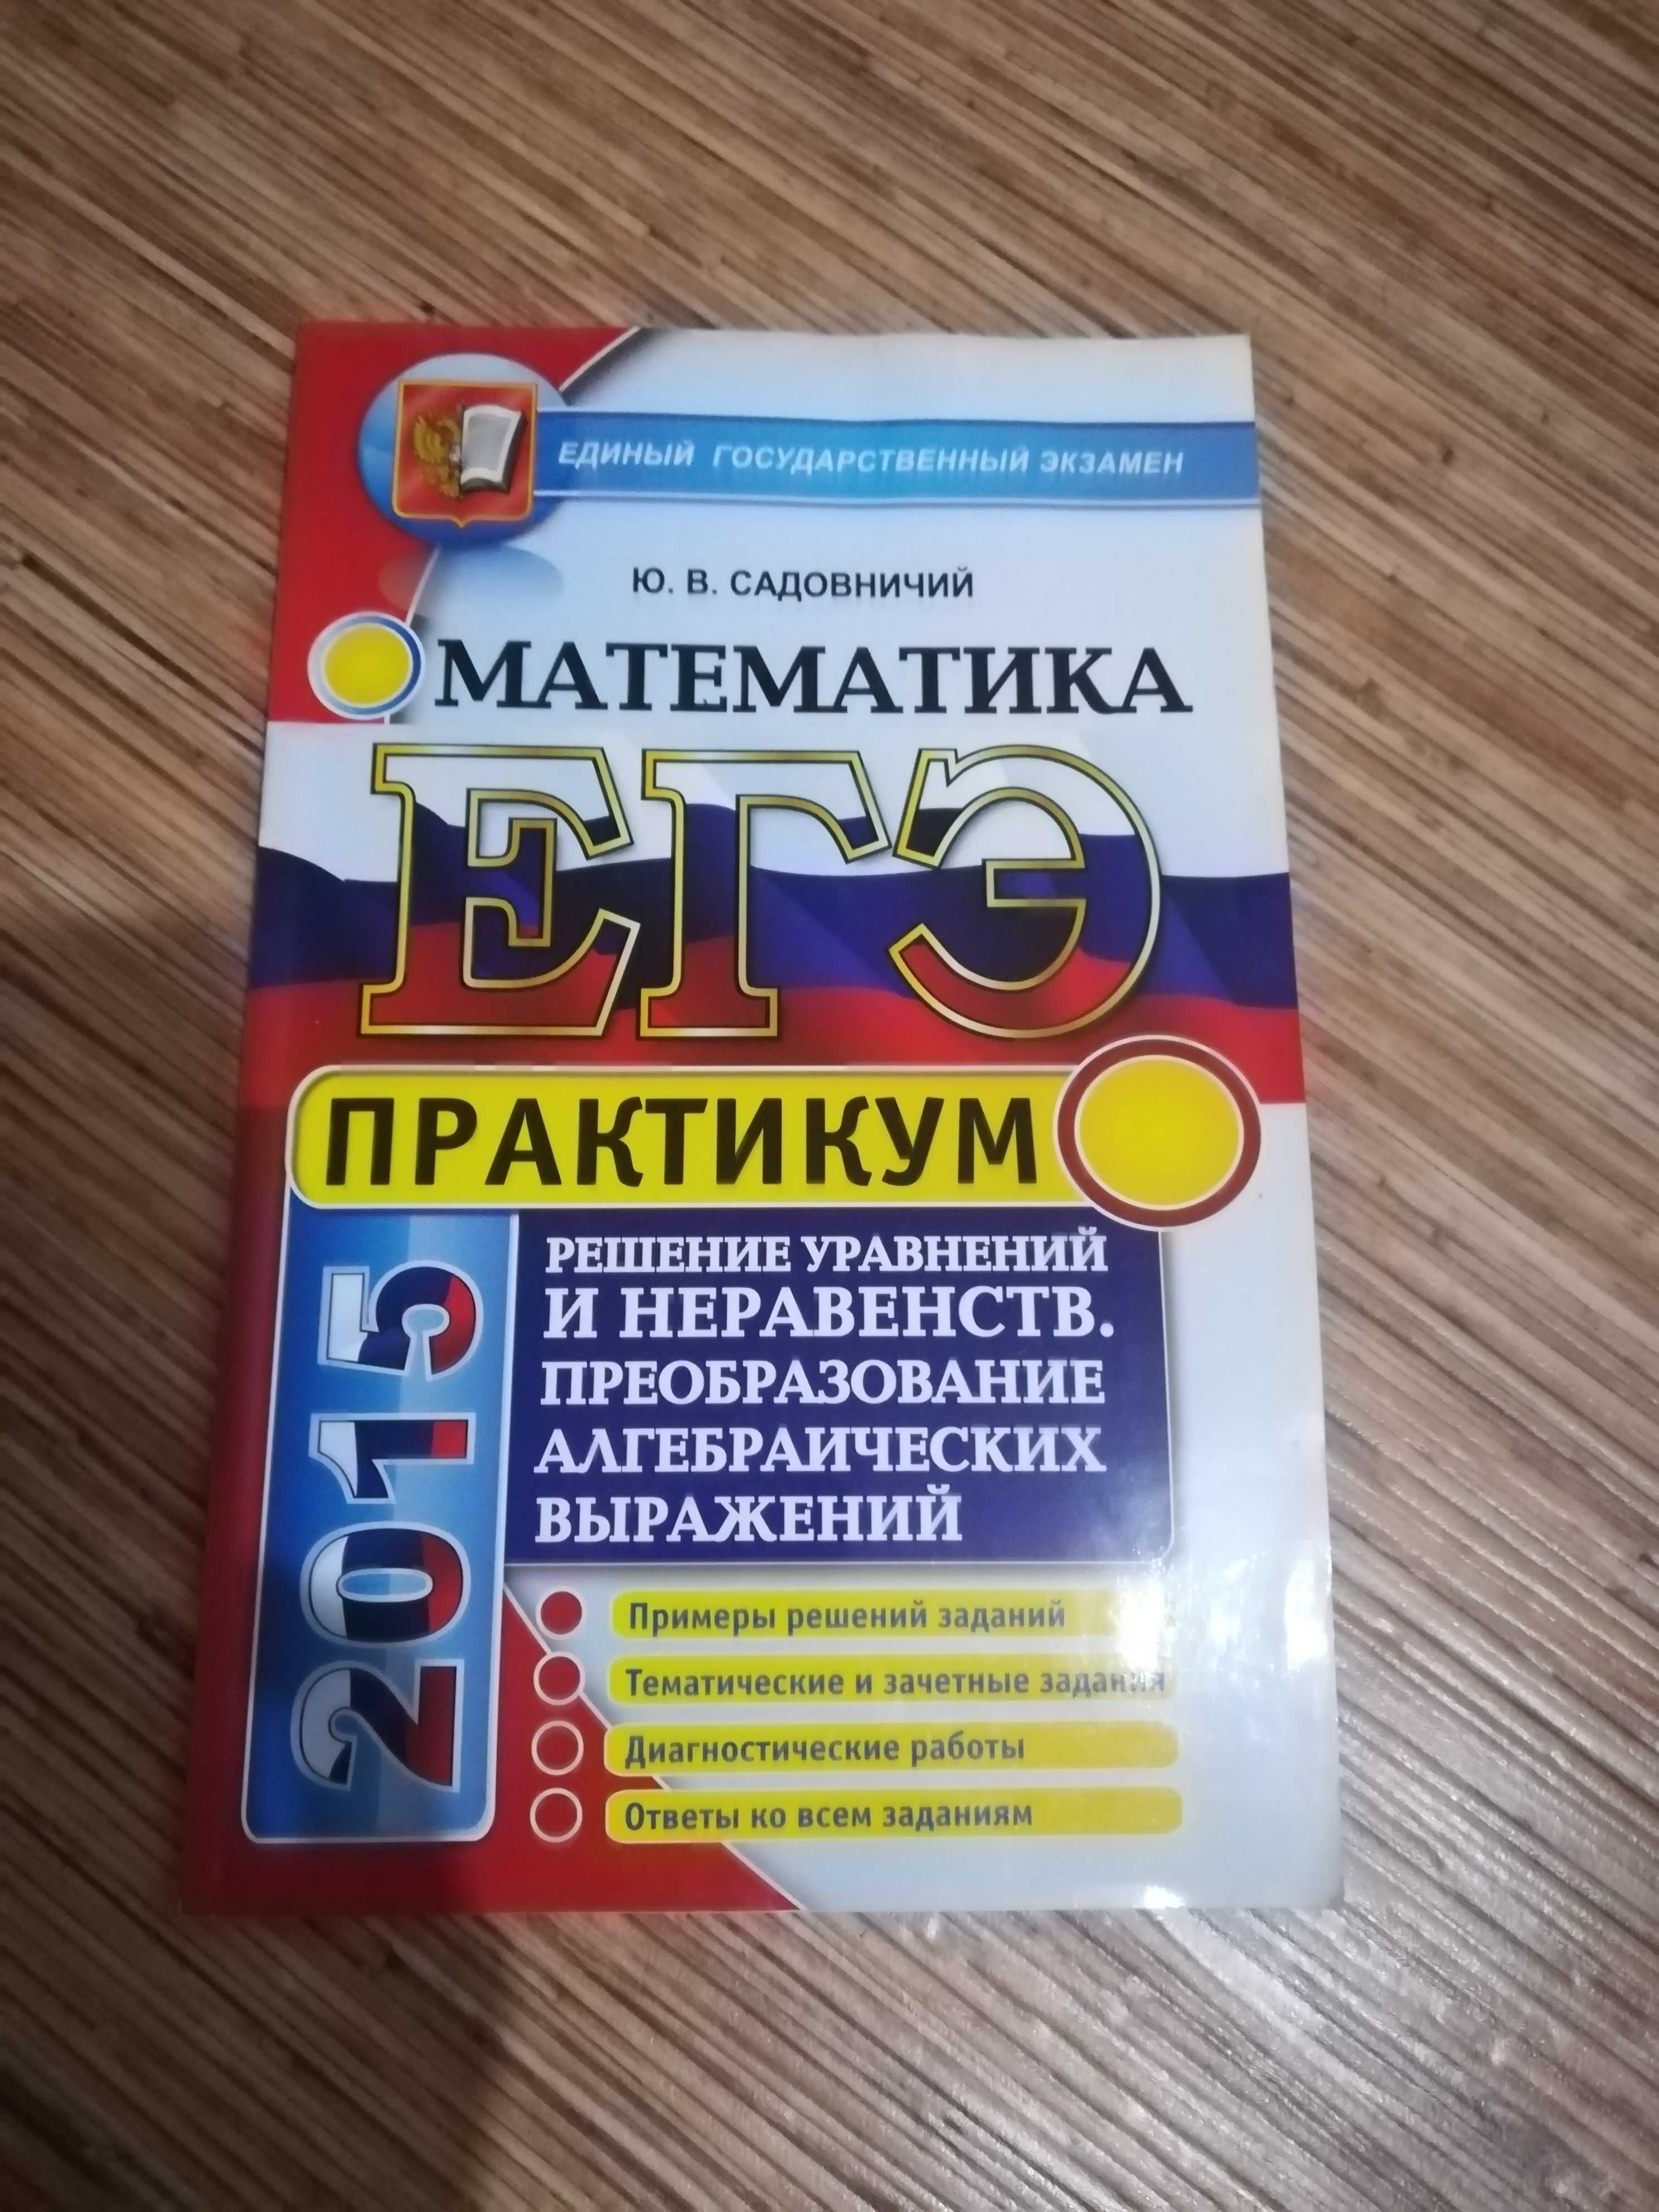 Учебное пособие - практикум по подготовке к ЕГЭ "Математика"